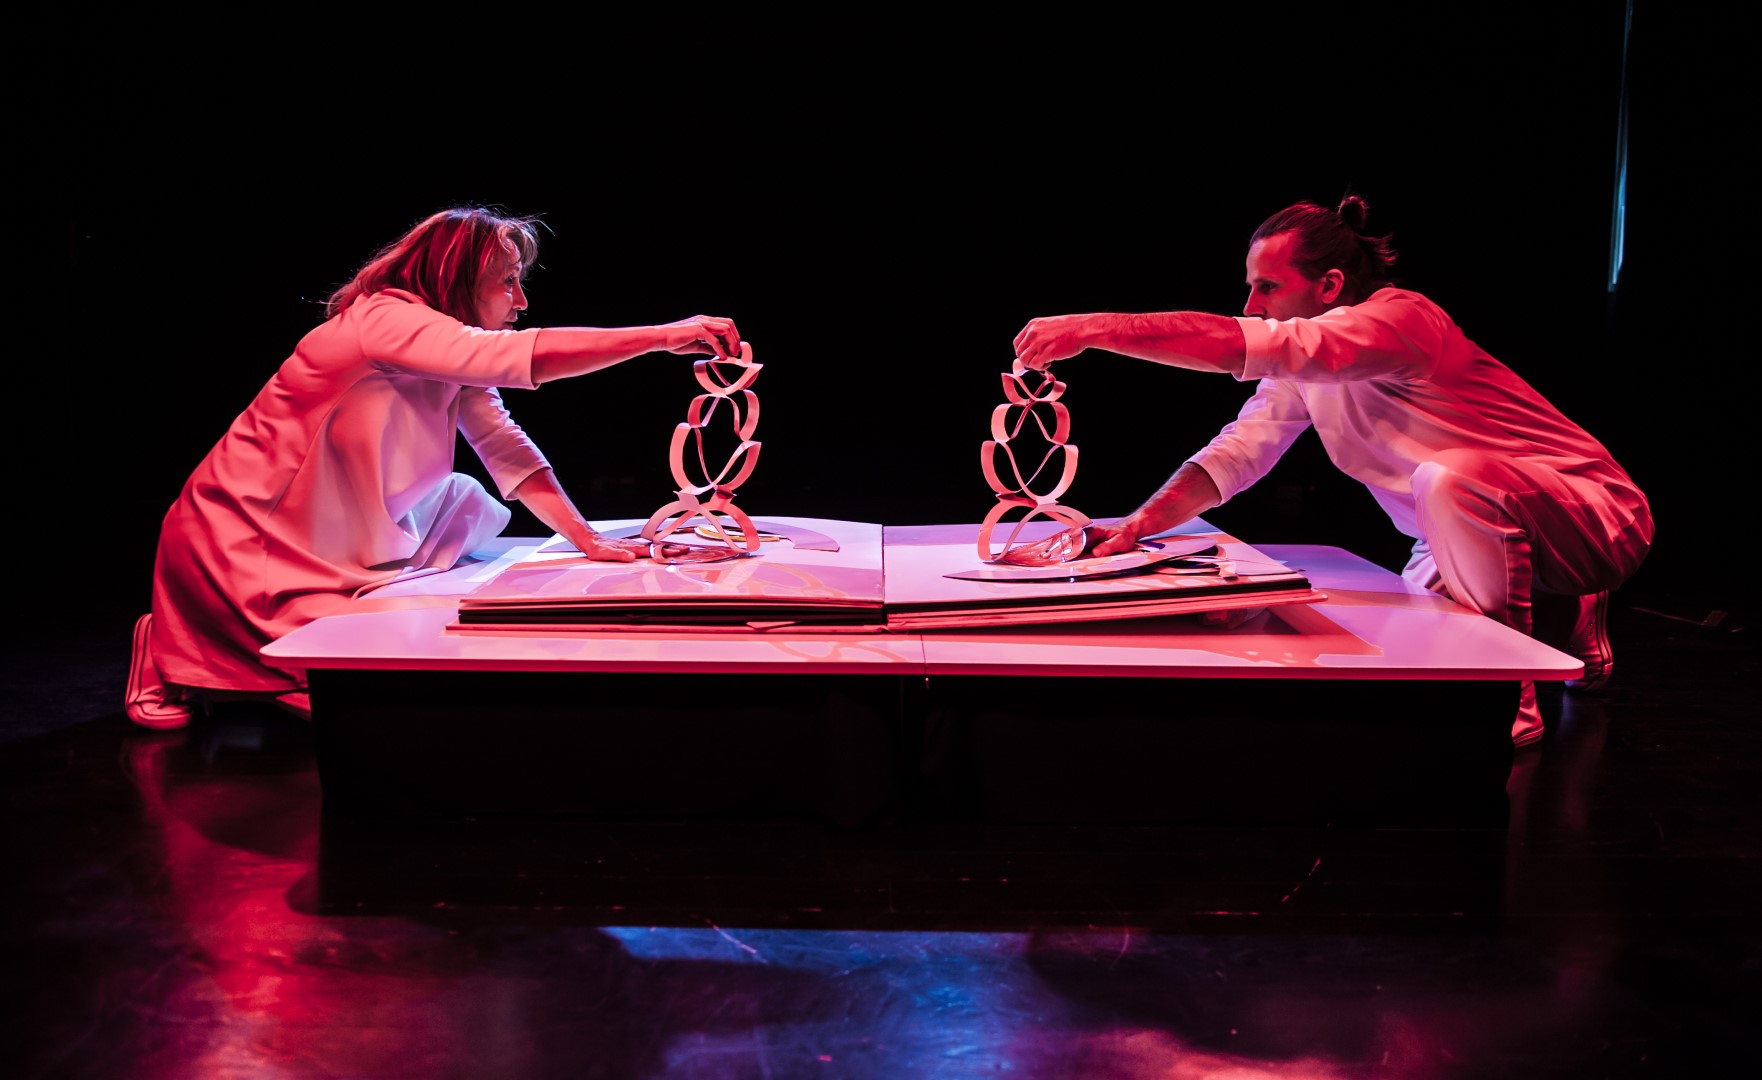 Scena ze spektaklu pt. "Ksiiazeczka" przedstawia dwoje aktorów ubranych na biało posługujący się formami origami które leżą na wielkiej książce